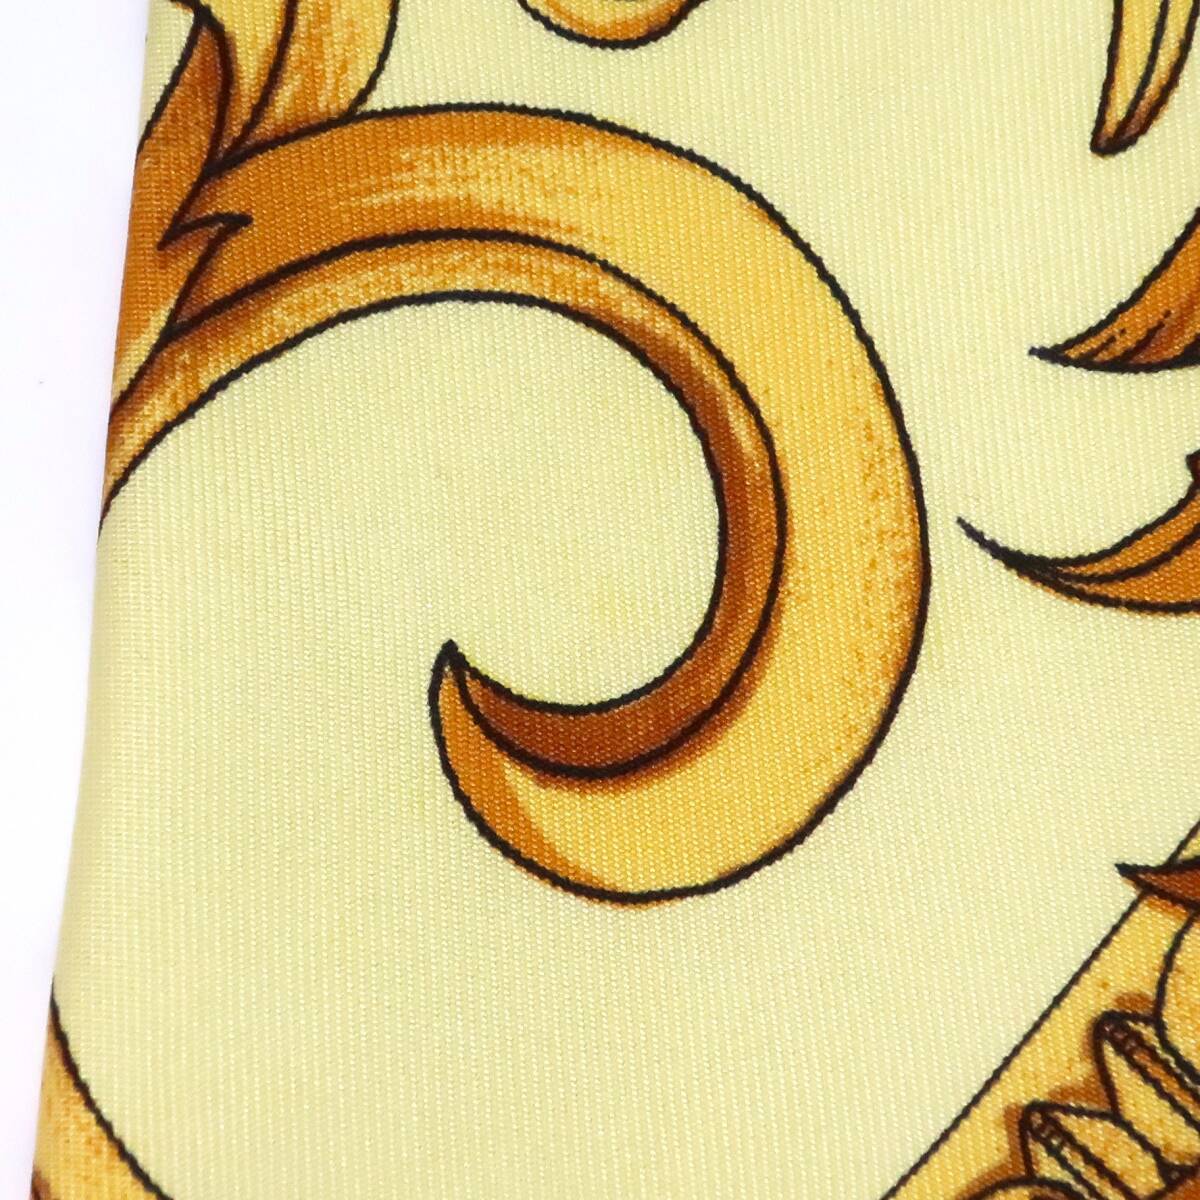  галстук * Gianni Versace kchu-ruGIANNI VERSACE COUTURE* оттенок желтого шелк стоимость доставки 230 иен 